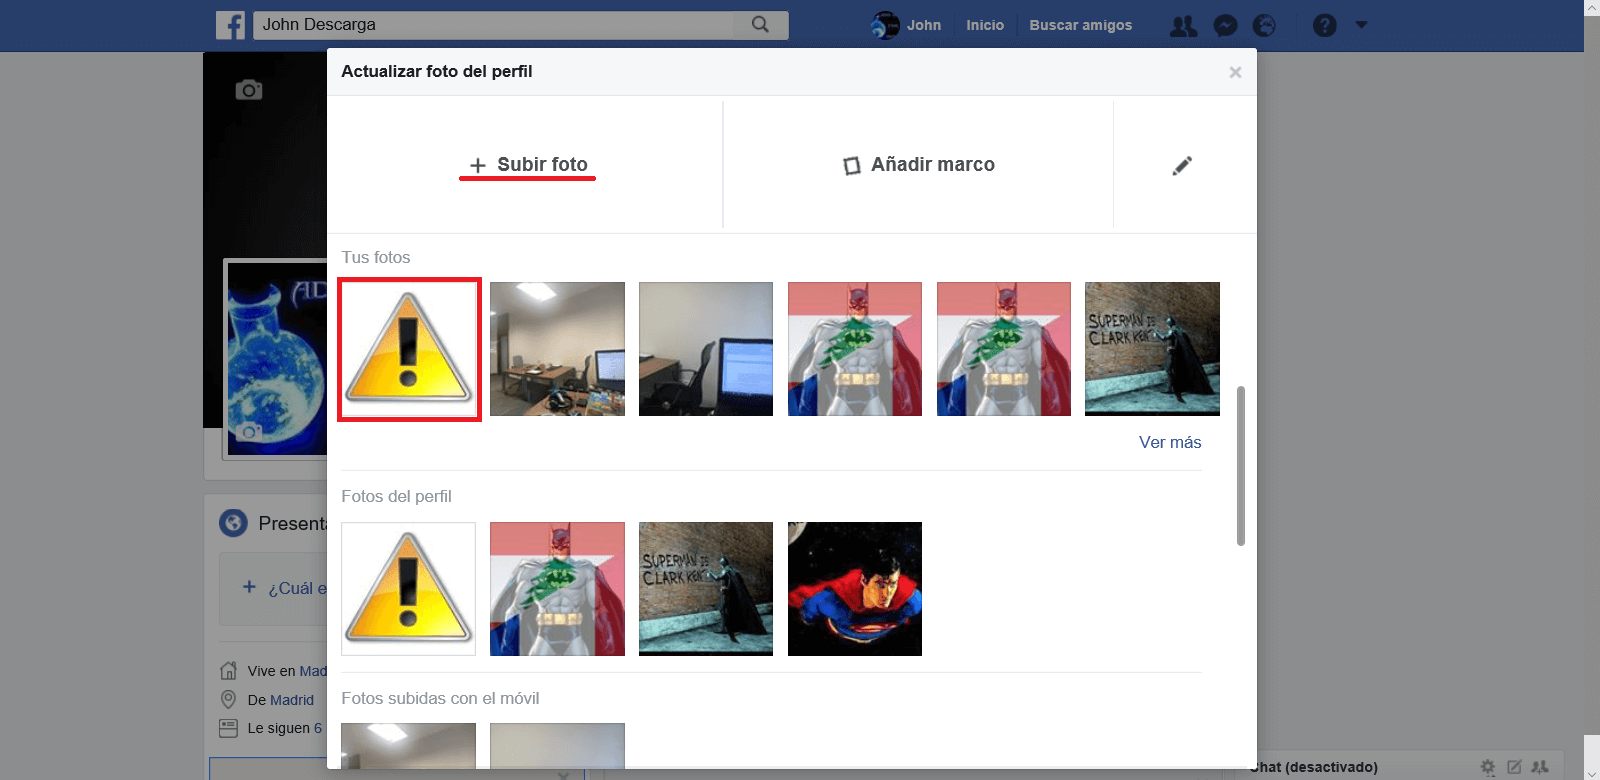 Como cambiar la foto de p erfil de facebook sin que otros usuarios lo sepan